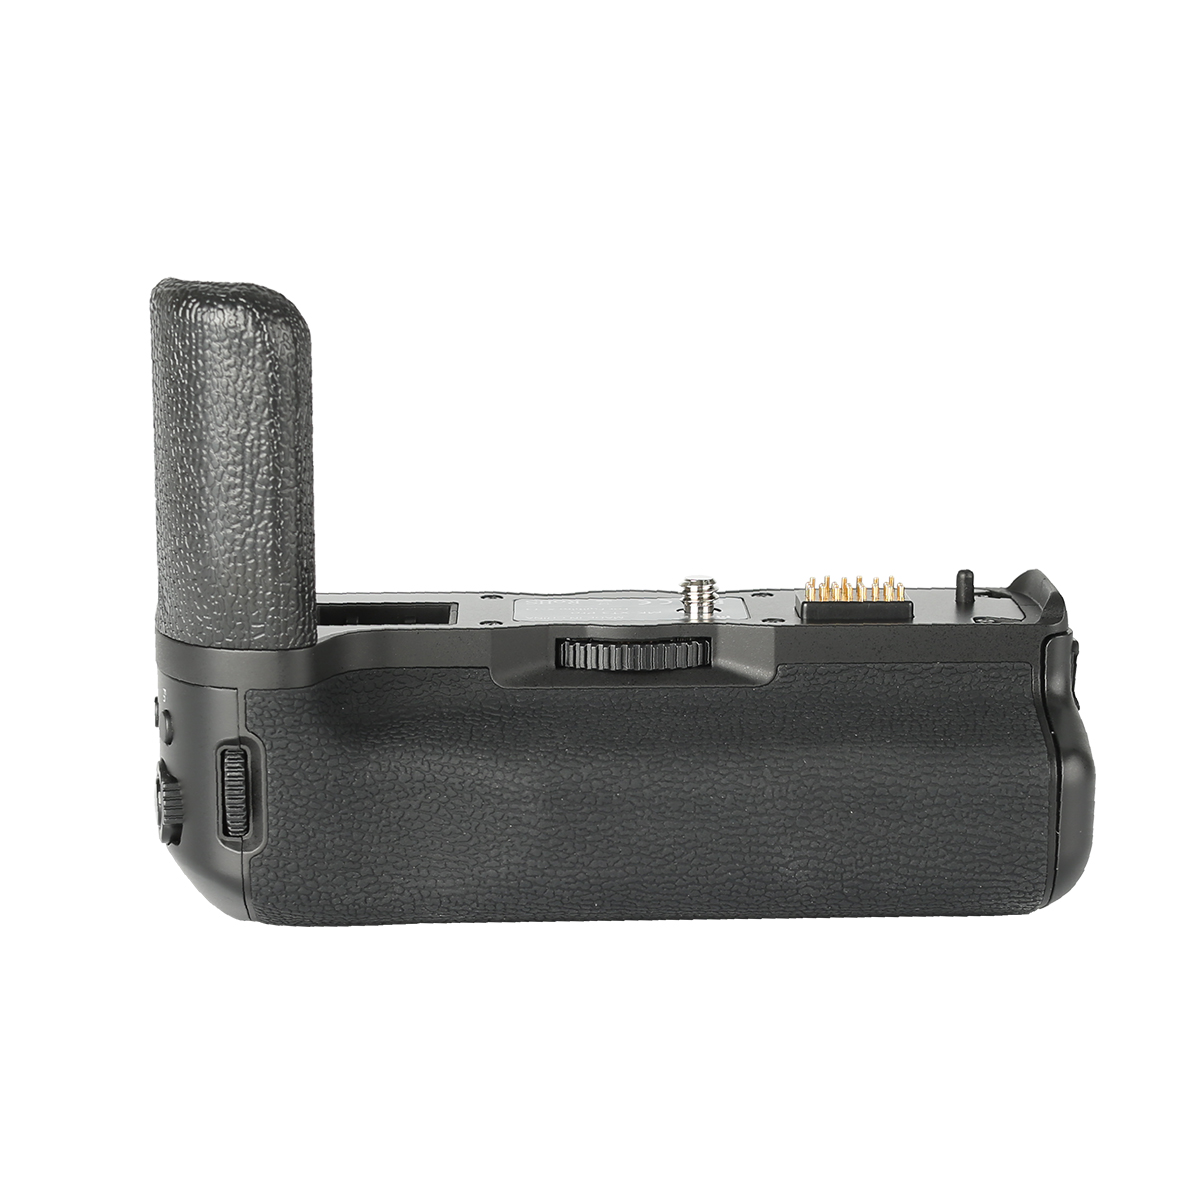 Meike Batteriegriff MK-XT3 Pro + Funk Timer Fernauslöser für Fujifilm X-T3 ähnlich VG-XT3